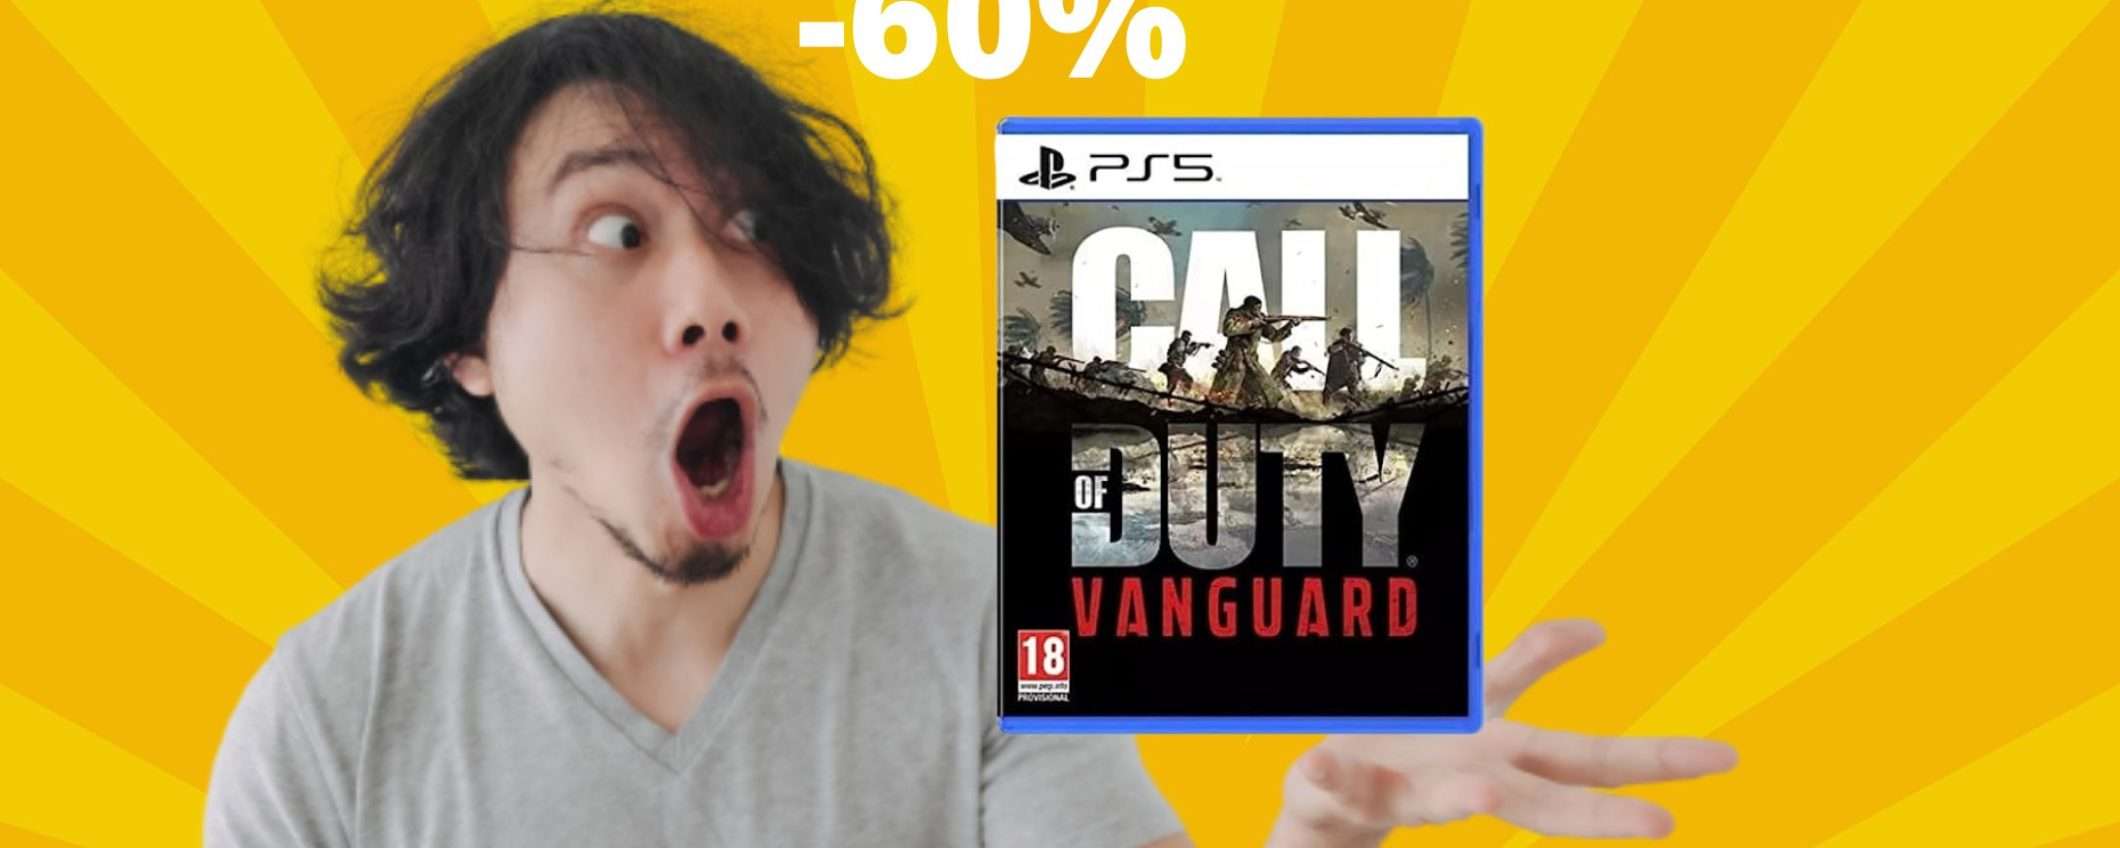 Call of Duty Vanguard: il gioco per PS5 con lo sconto FOLLE del 60%